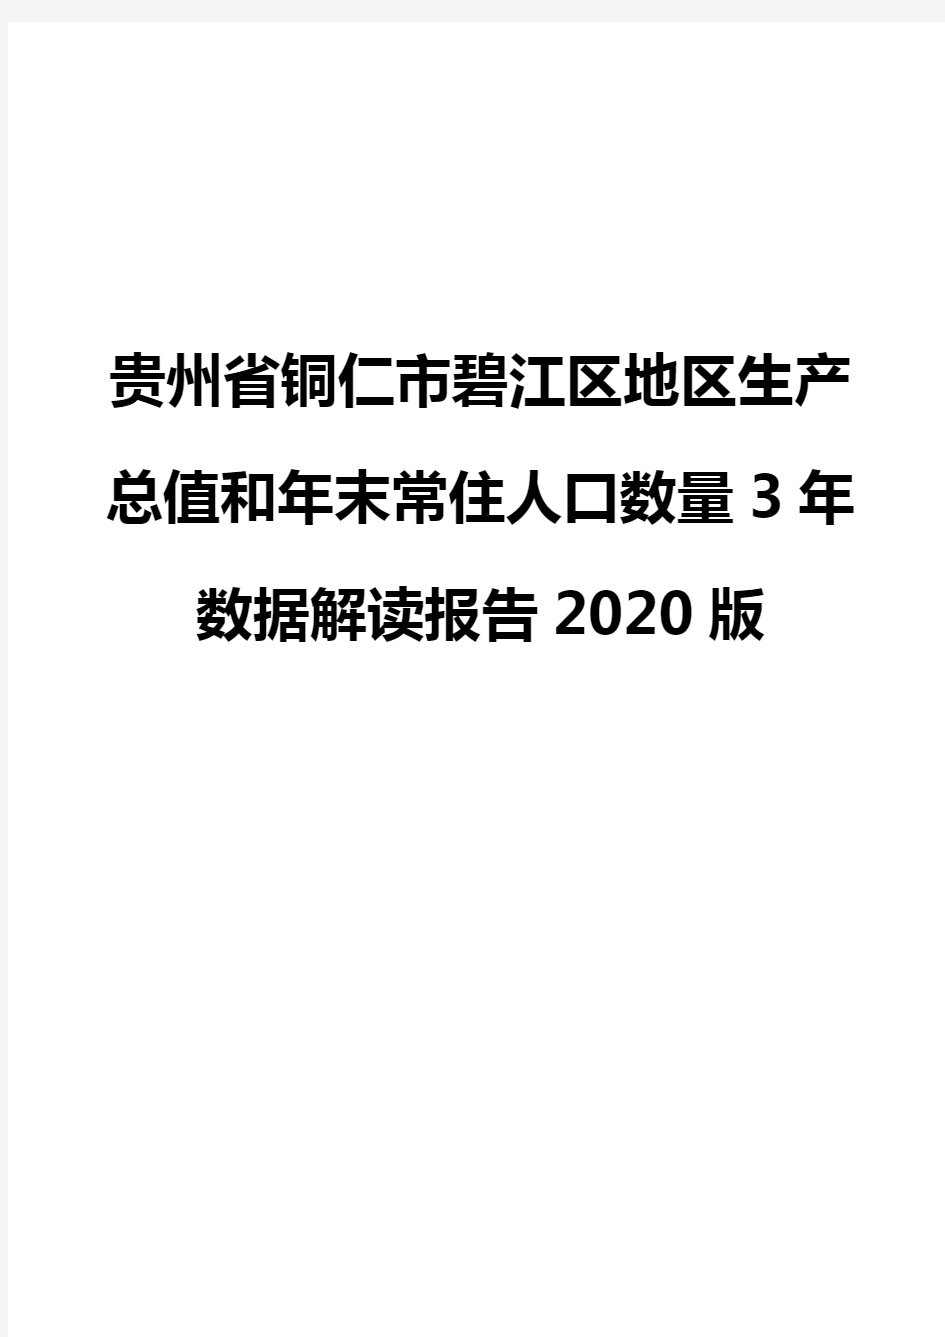 贵州省铜仁市碧江区地区生产总值和年末常住人口数量3年数据解读报告2020版